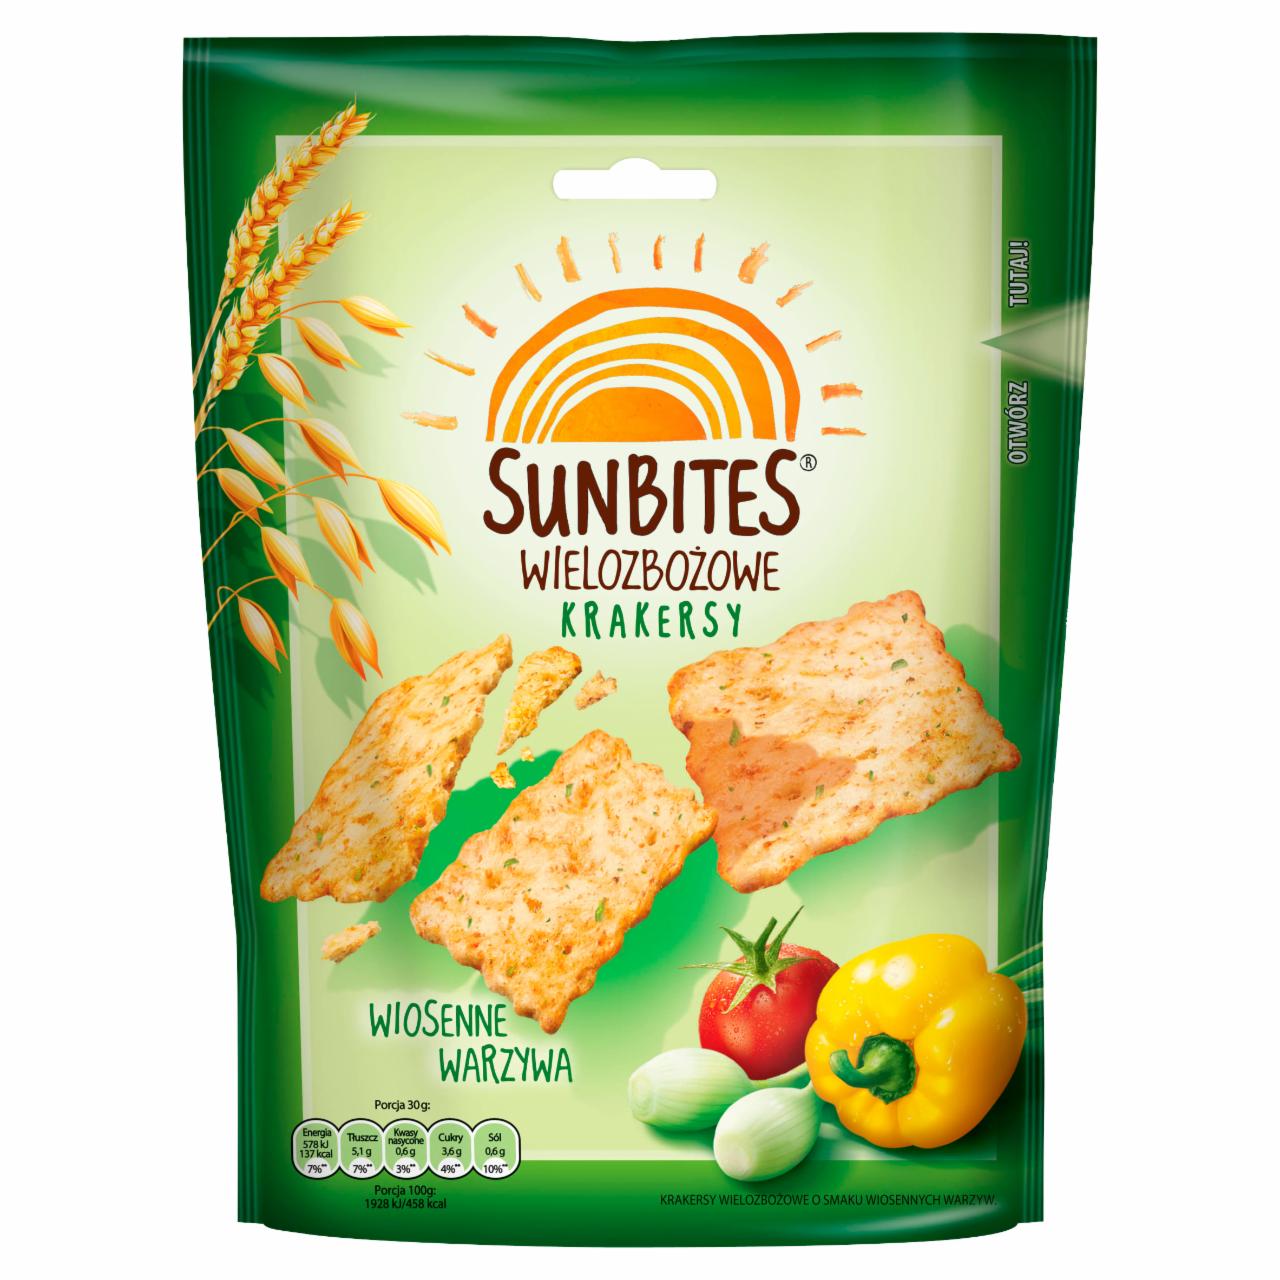 Zdjęcia - Sunbites Wielozbożowe krakersy wiosenne warzywa 100 g